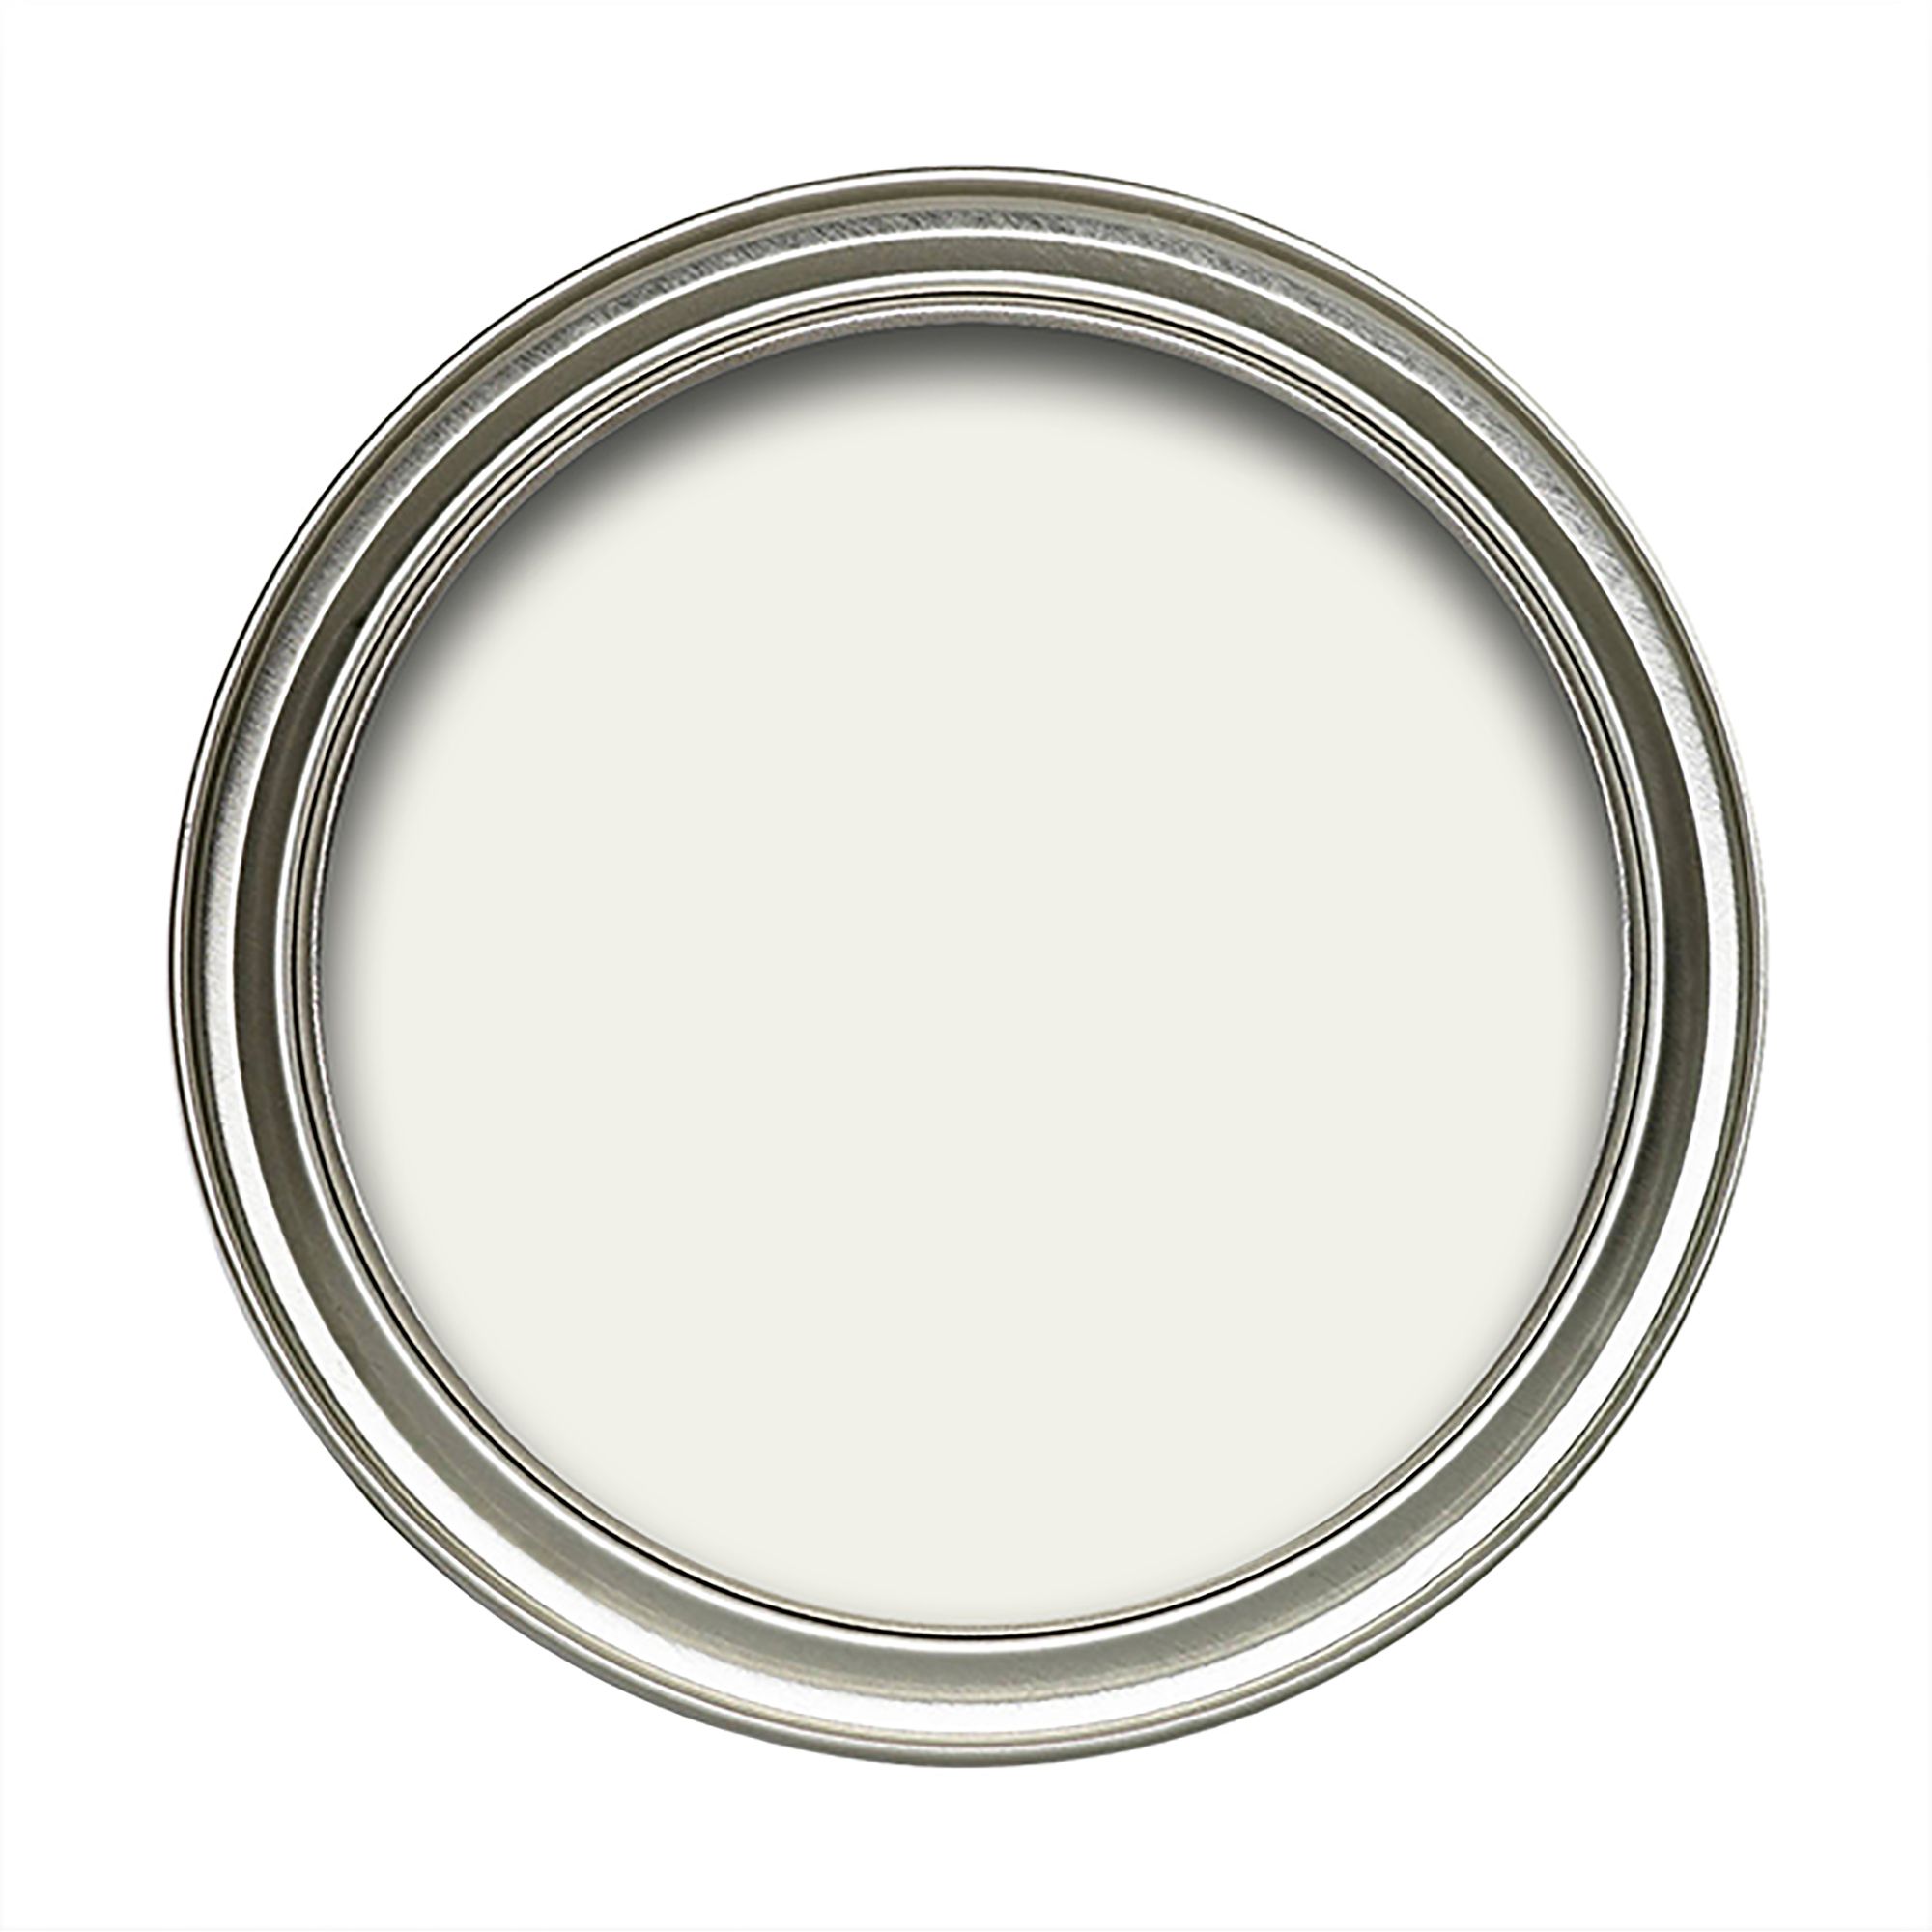 Dulux White Soft sheen Emulsion paint, 5L